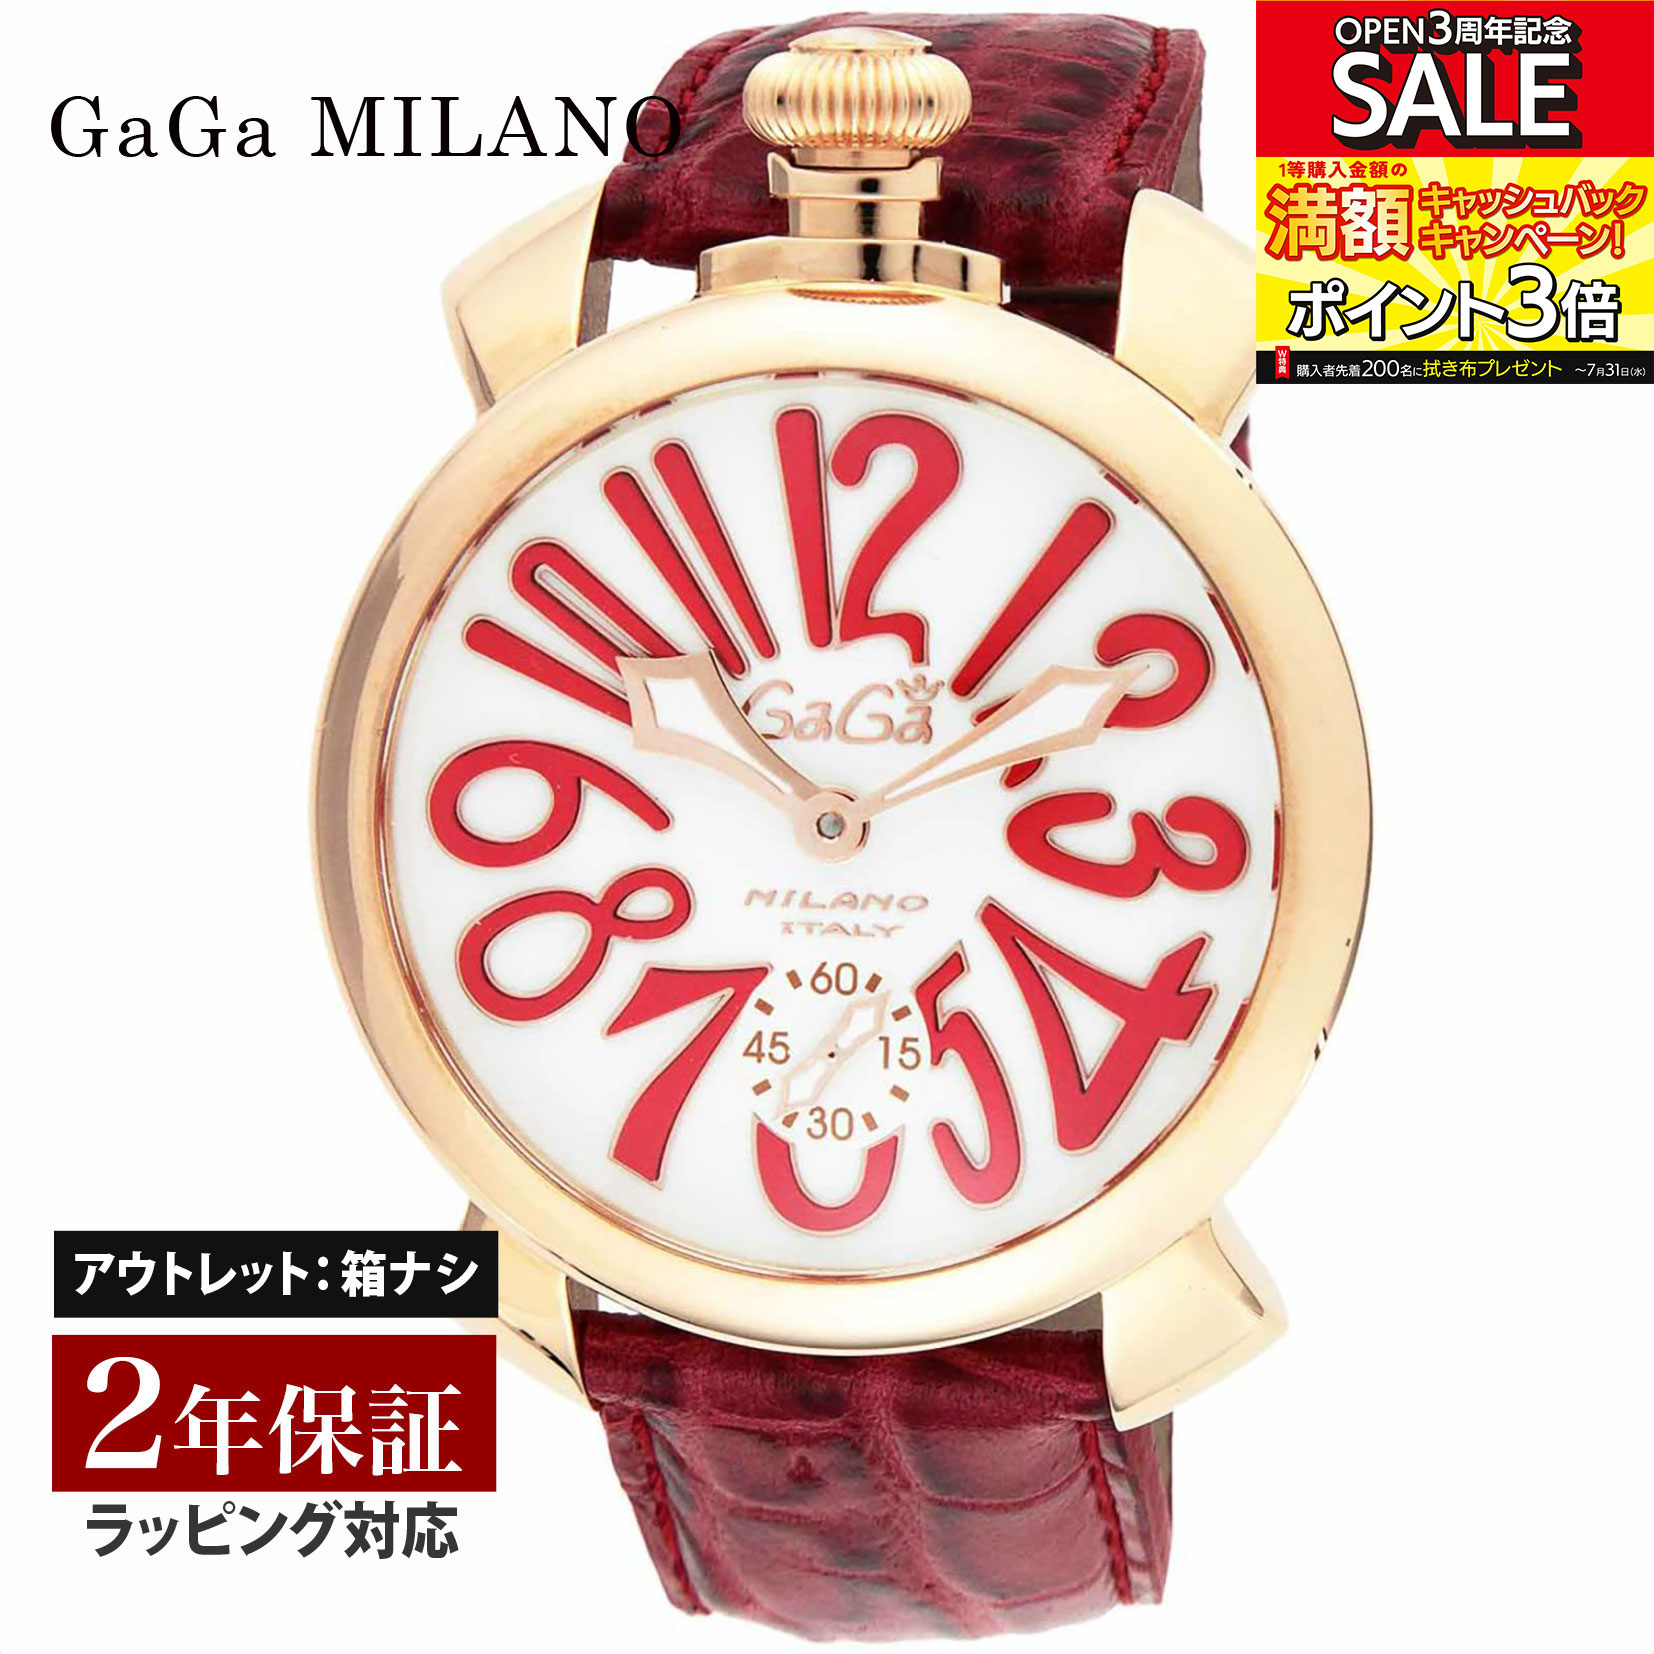 【クリアランスSALE】 GaGaMILAN ガガミラノ MANUALE 48MM 手巻き メンズ ホワイト 5011.10S-RED 腕時計 高級腕時計 ブランド 